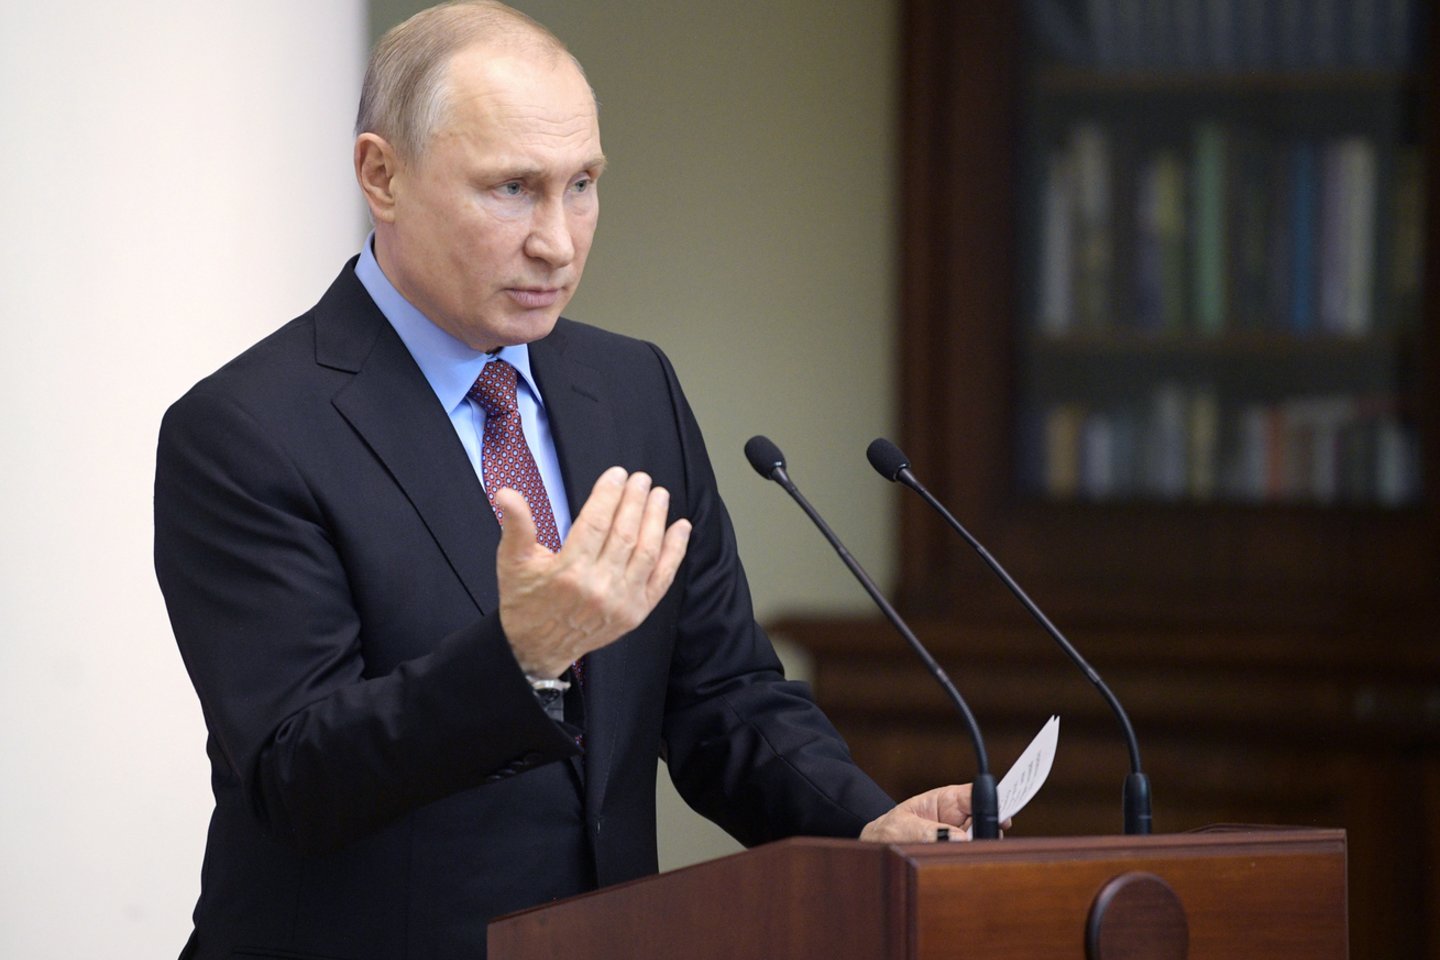  V.Putinas sulaukė kaltinimų savo sprendimais stabdant taikos procesą.<br> Reuters/Scanpix nuotr.